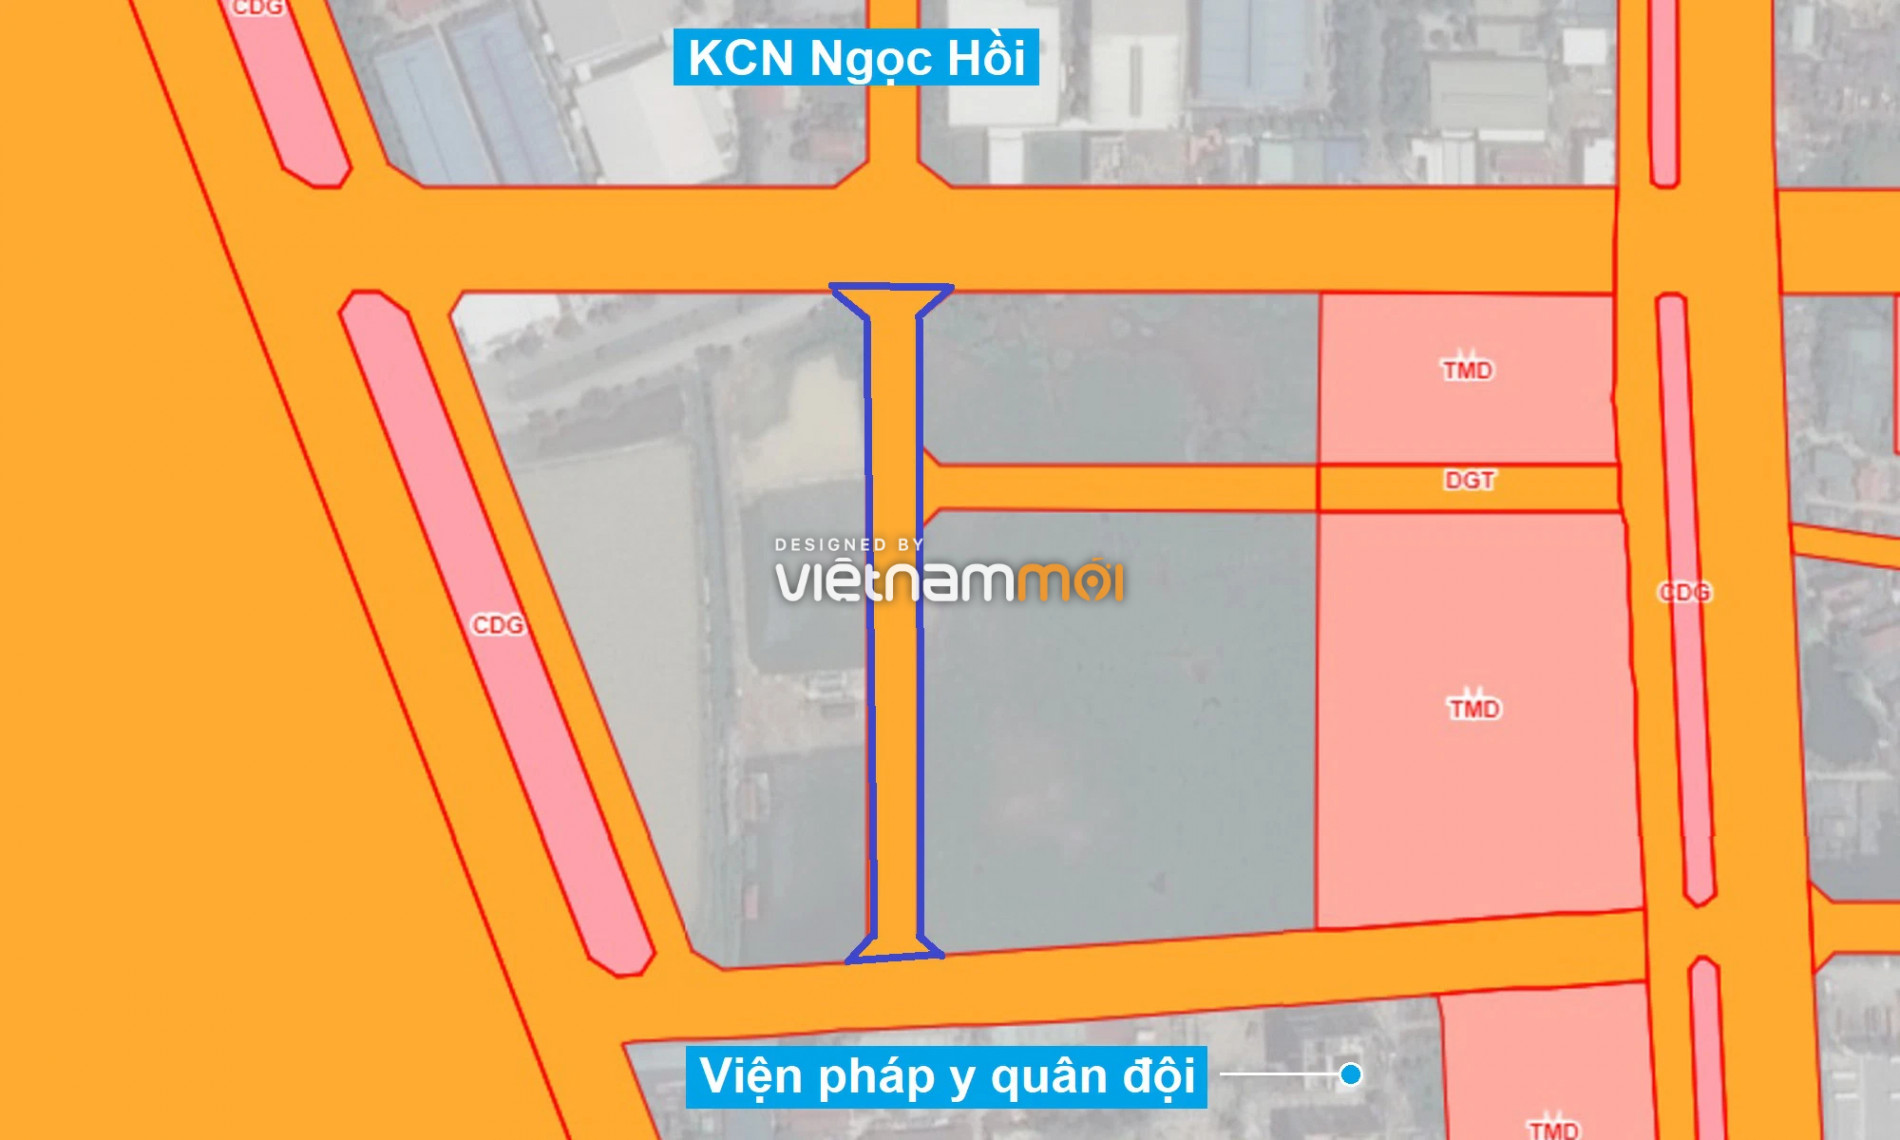 Những khu đất sắp thu hồi để mở đường ở xã Liên Ninh, Thanh Trì, Hà Nội (phần 4) - Ảnh 15.